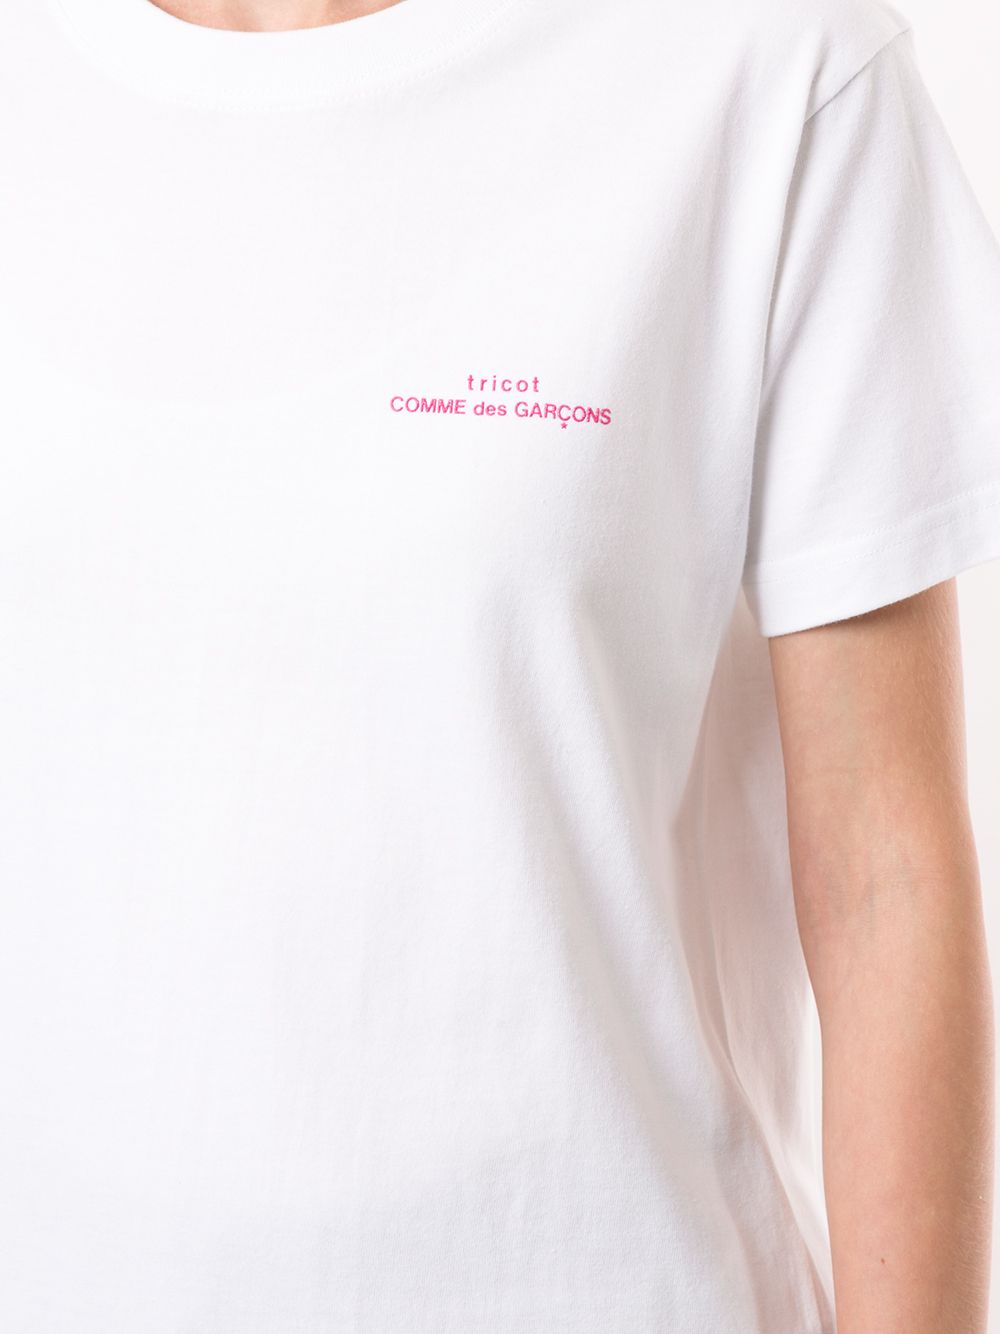 фото Comme des garçons tricot футболка с круглым вырезом и логотипом